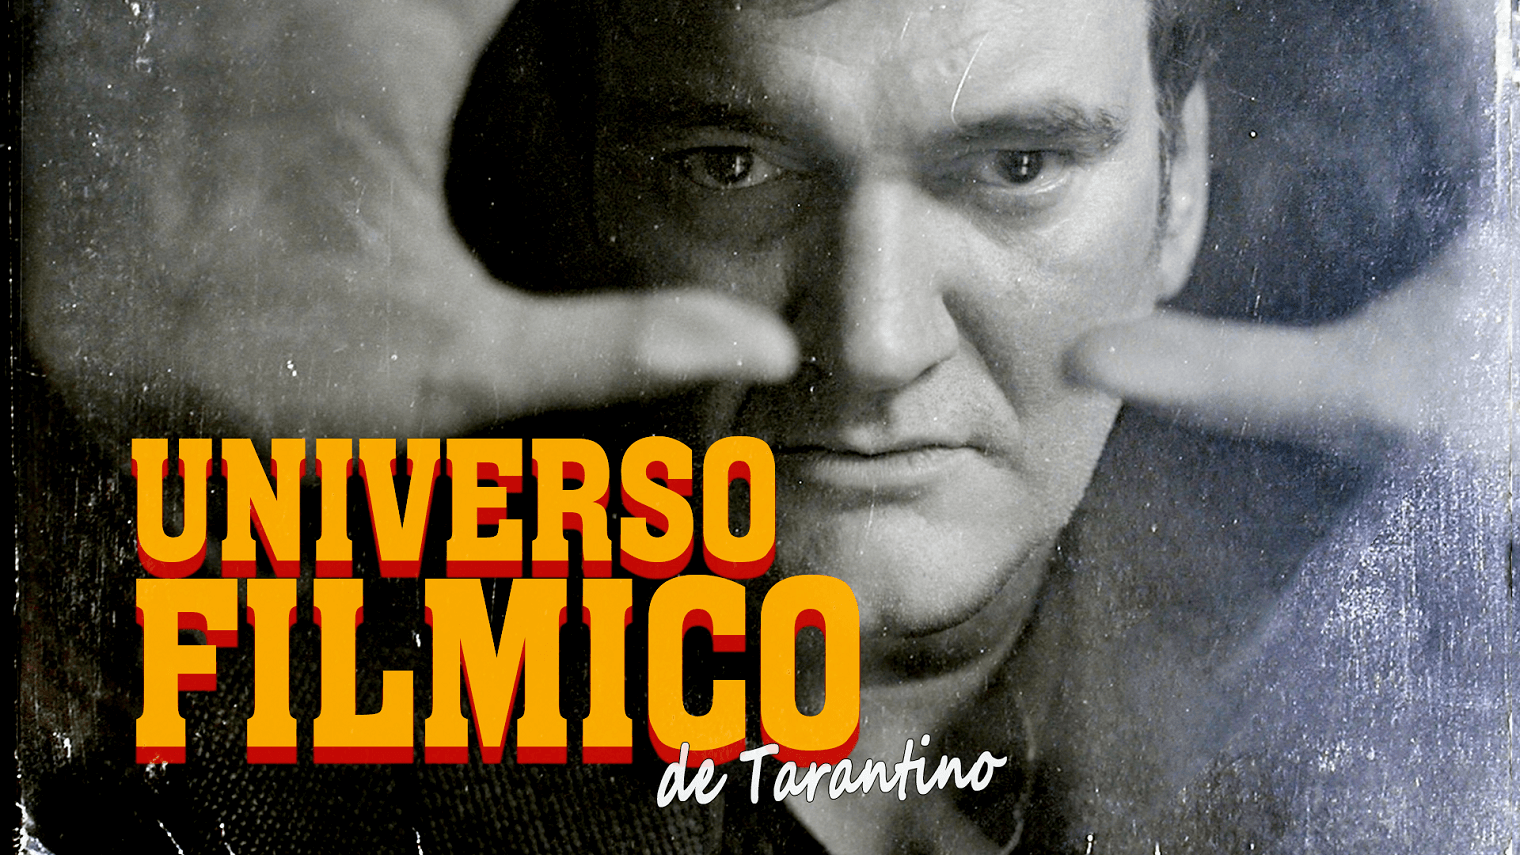 Os filmes de Quentin Tarantino interligam-se, este vídeo comprova isso mesmo